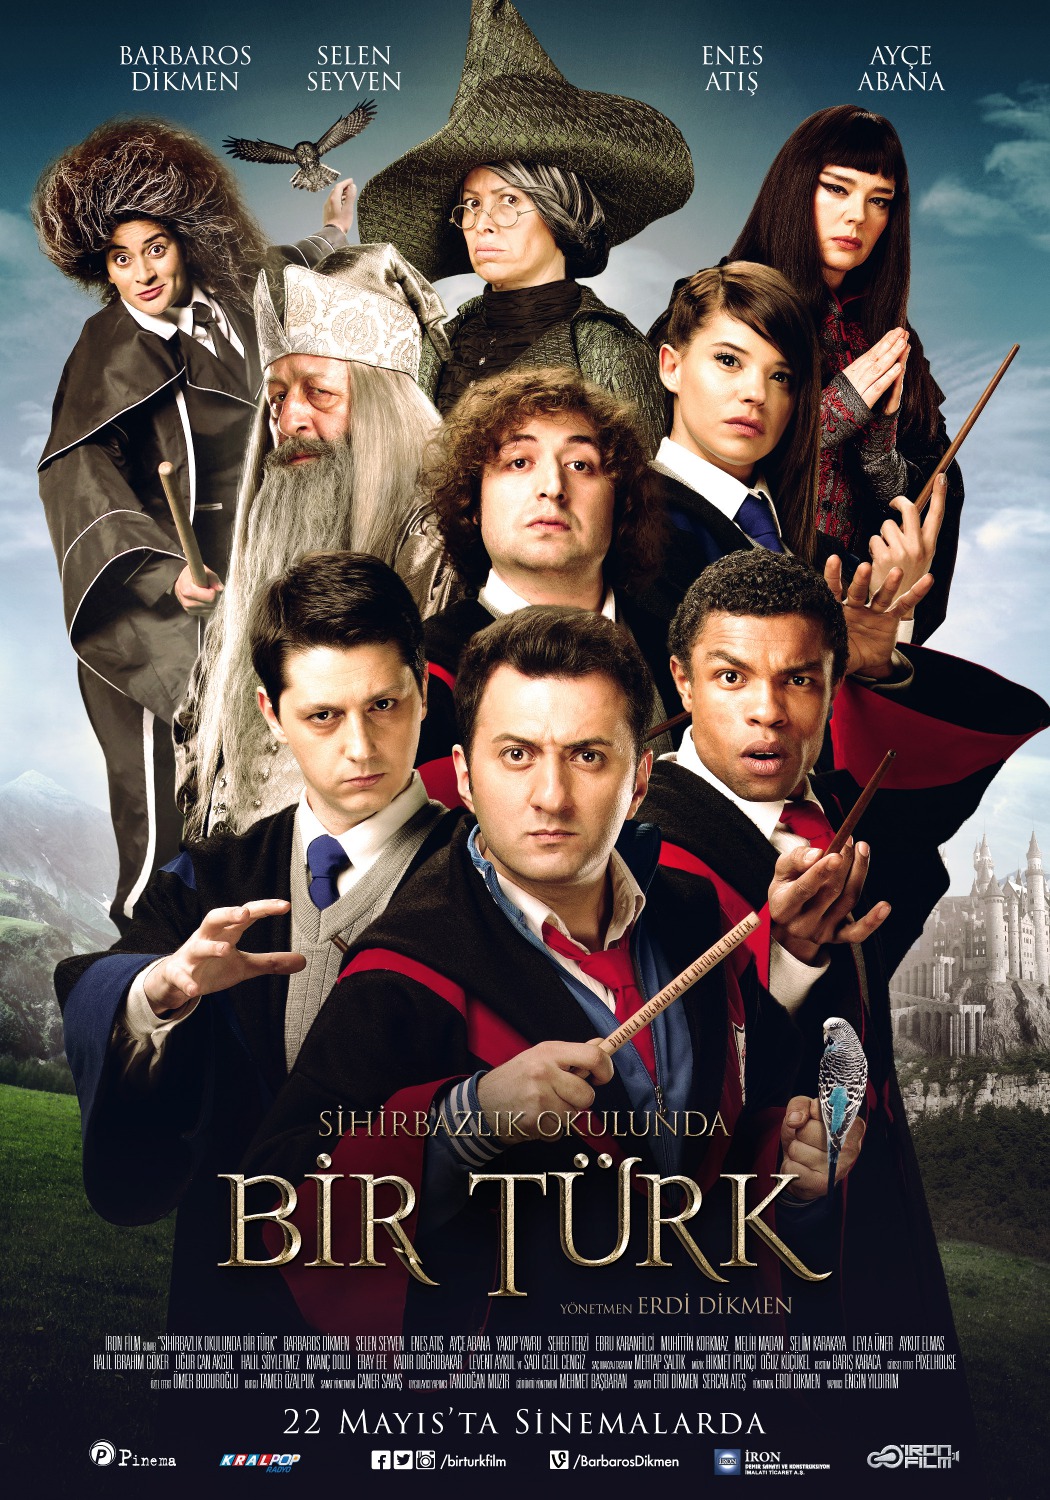 Extra Large Movie Poster Image for Sihirbazlik Okulunda Bir Türk 